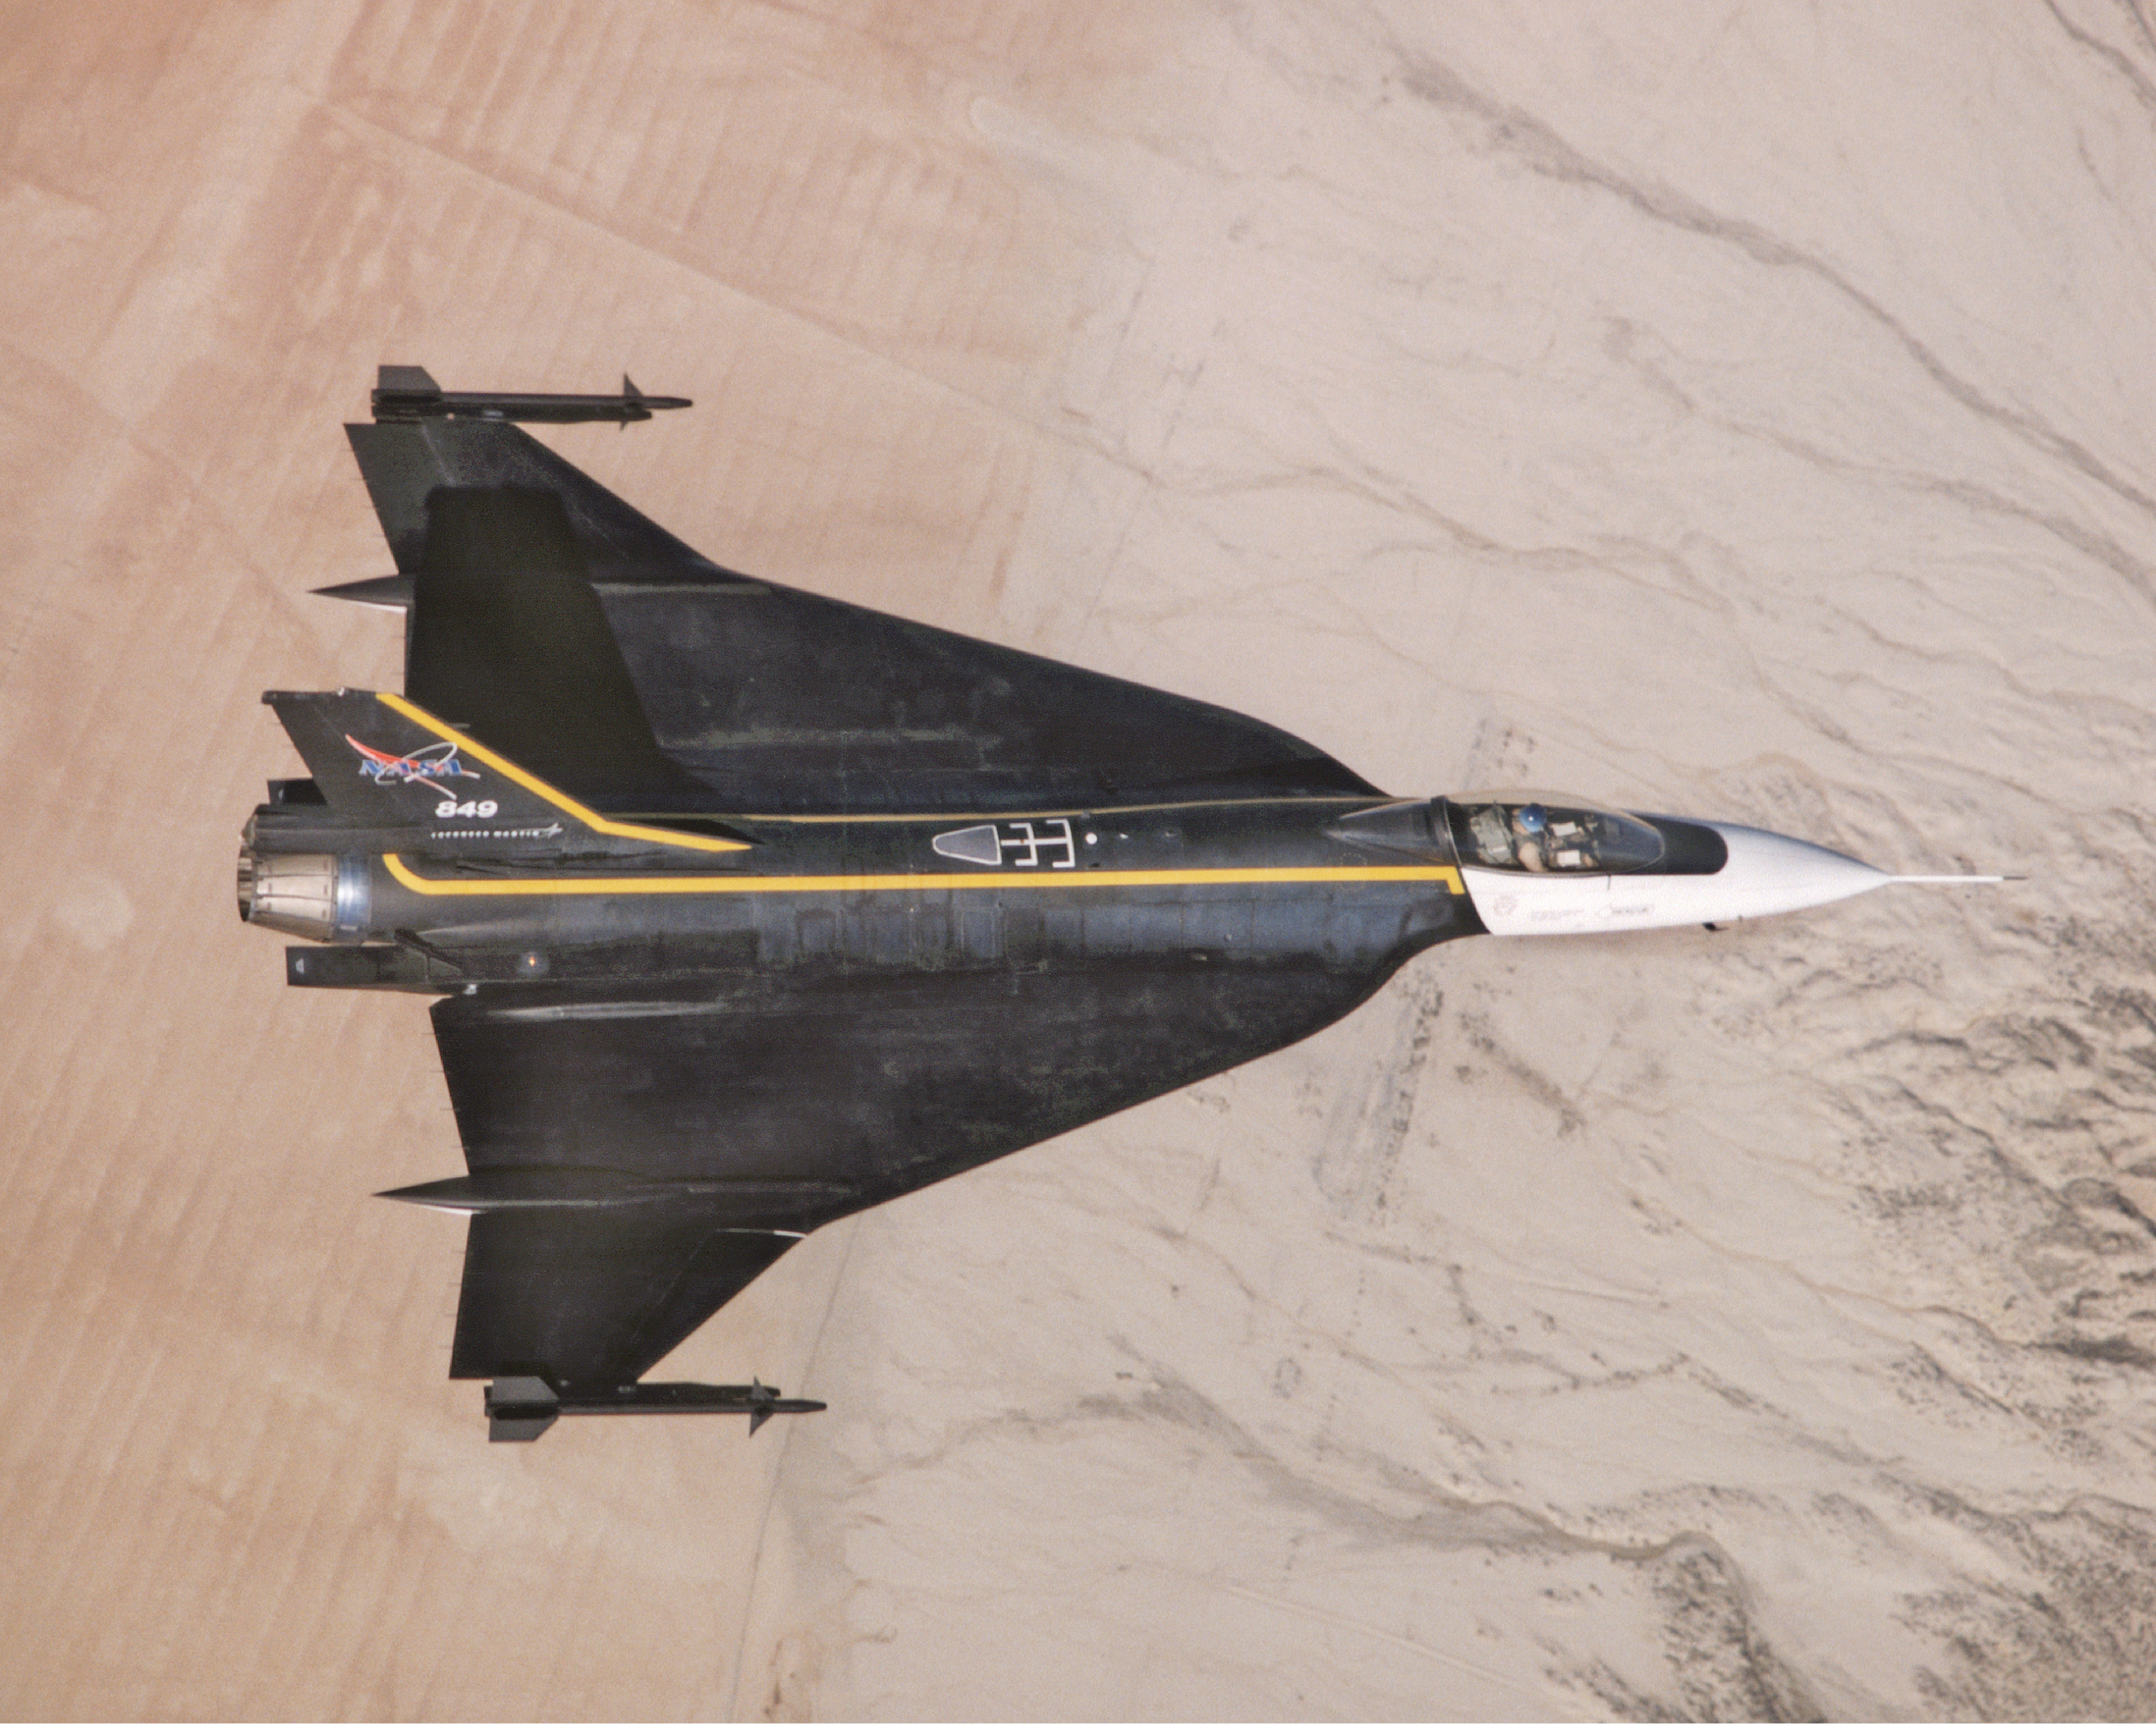 General Dynamics F-16XL